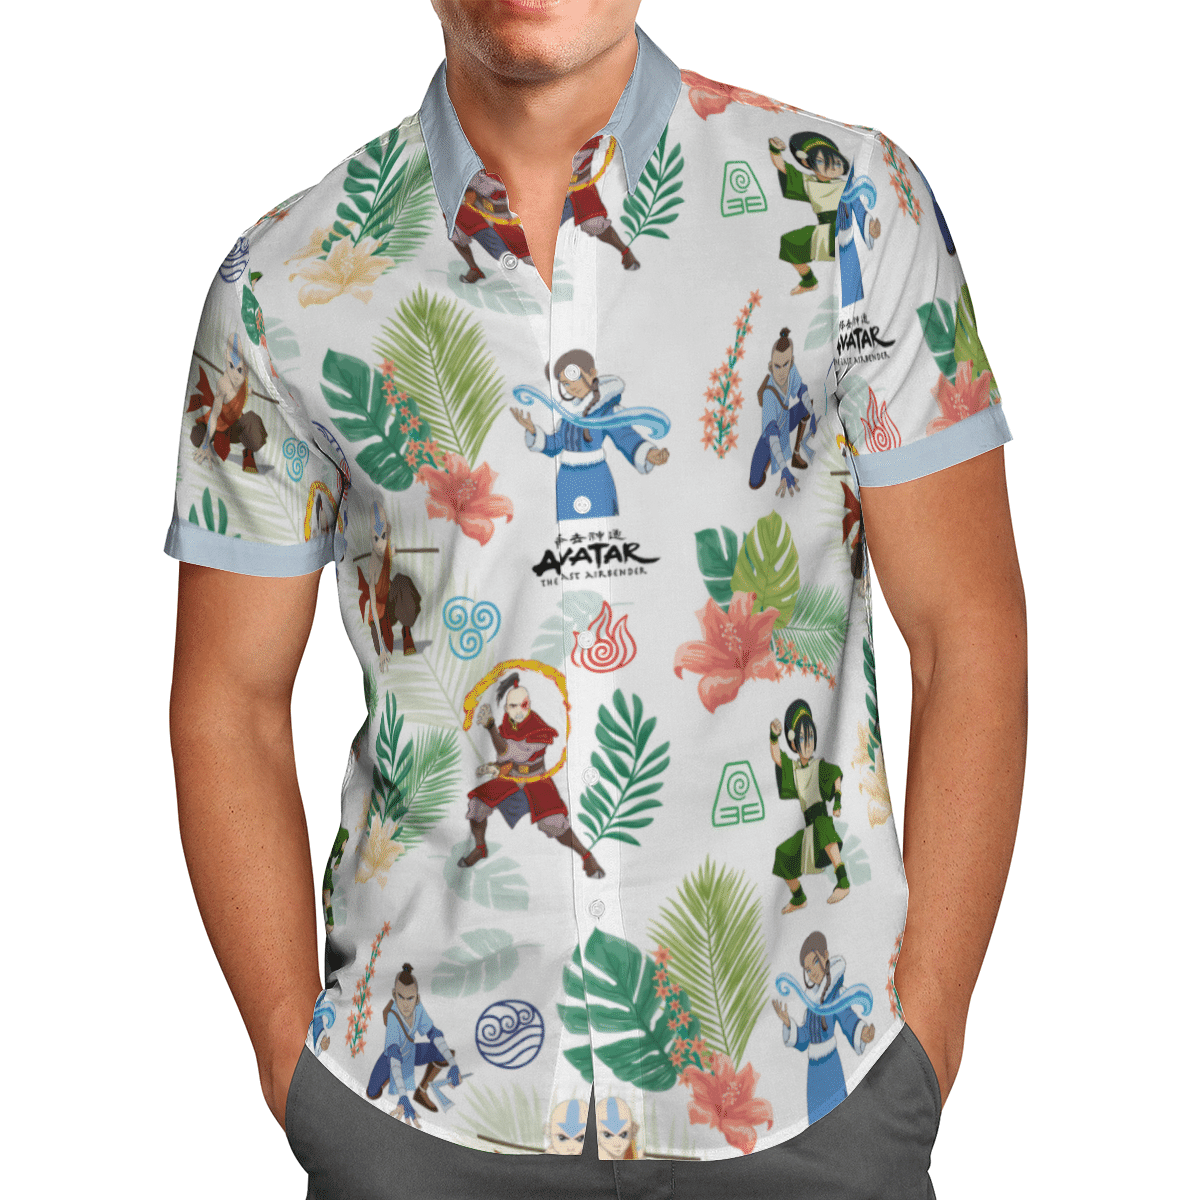 Earth Kingdom Avatar Hawaiian shirt 3